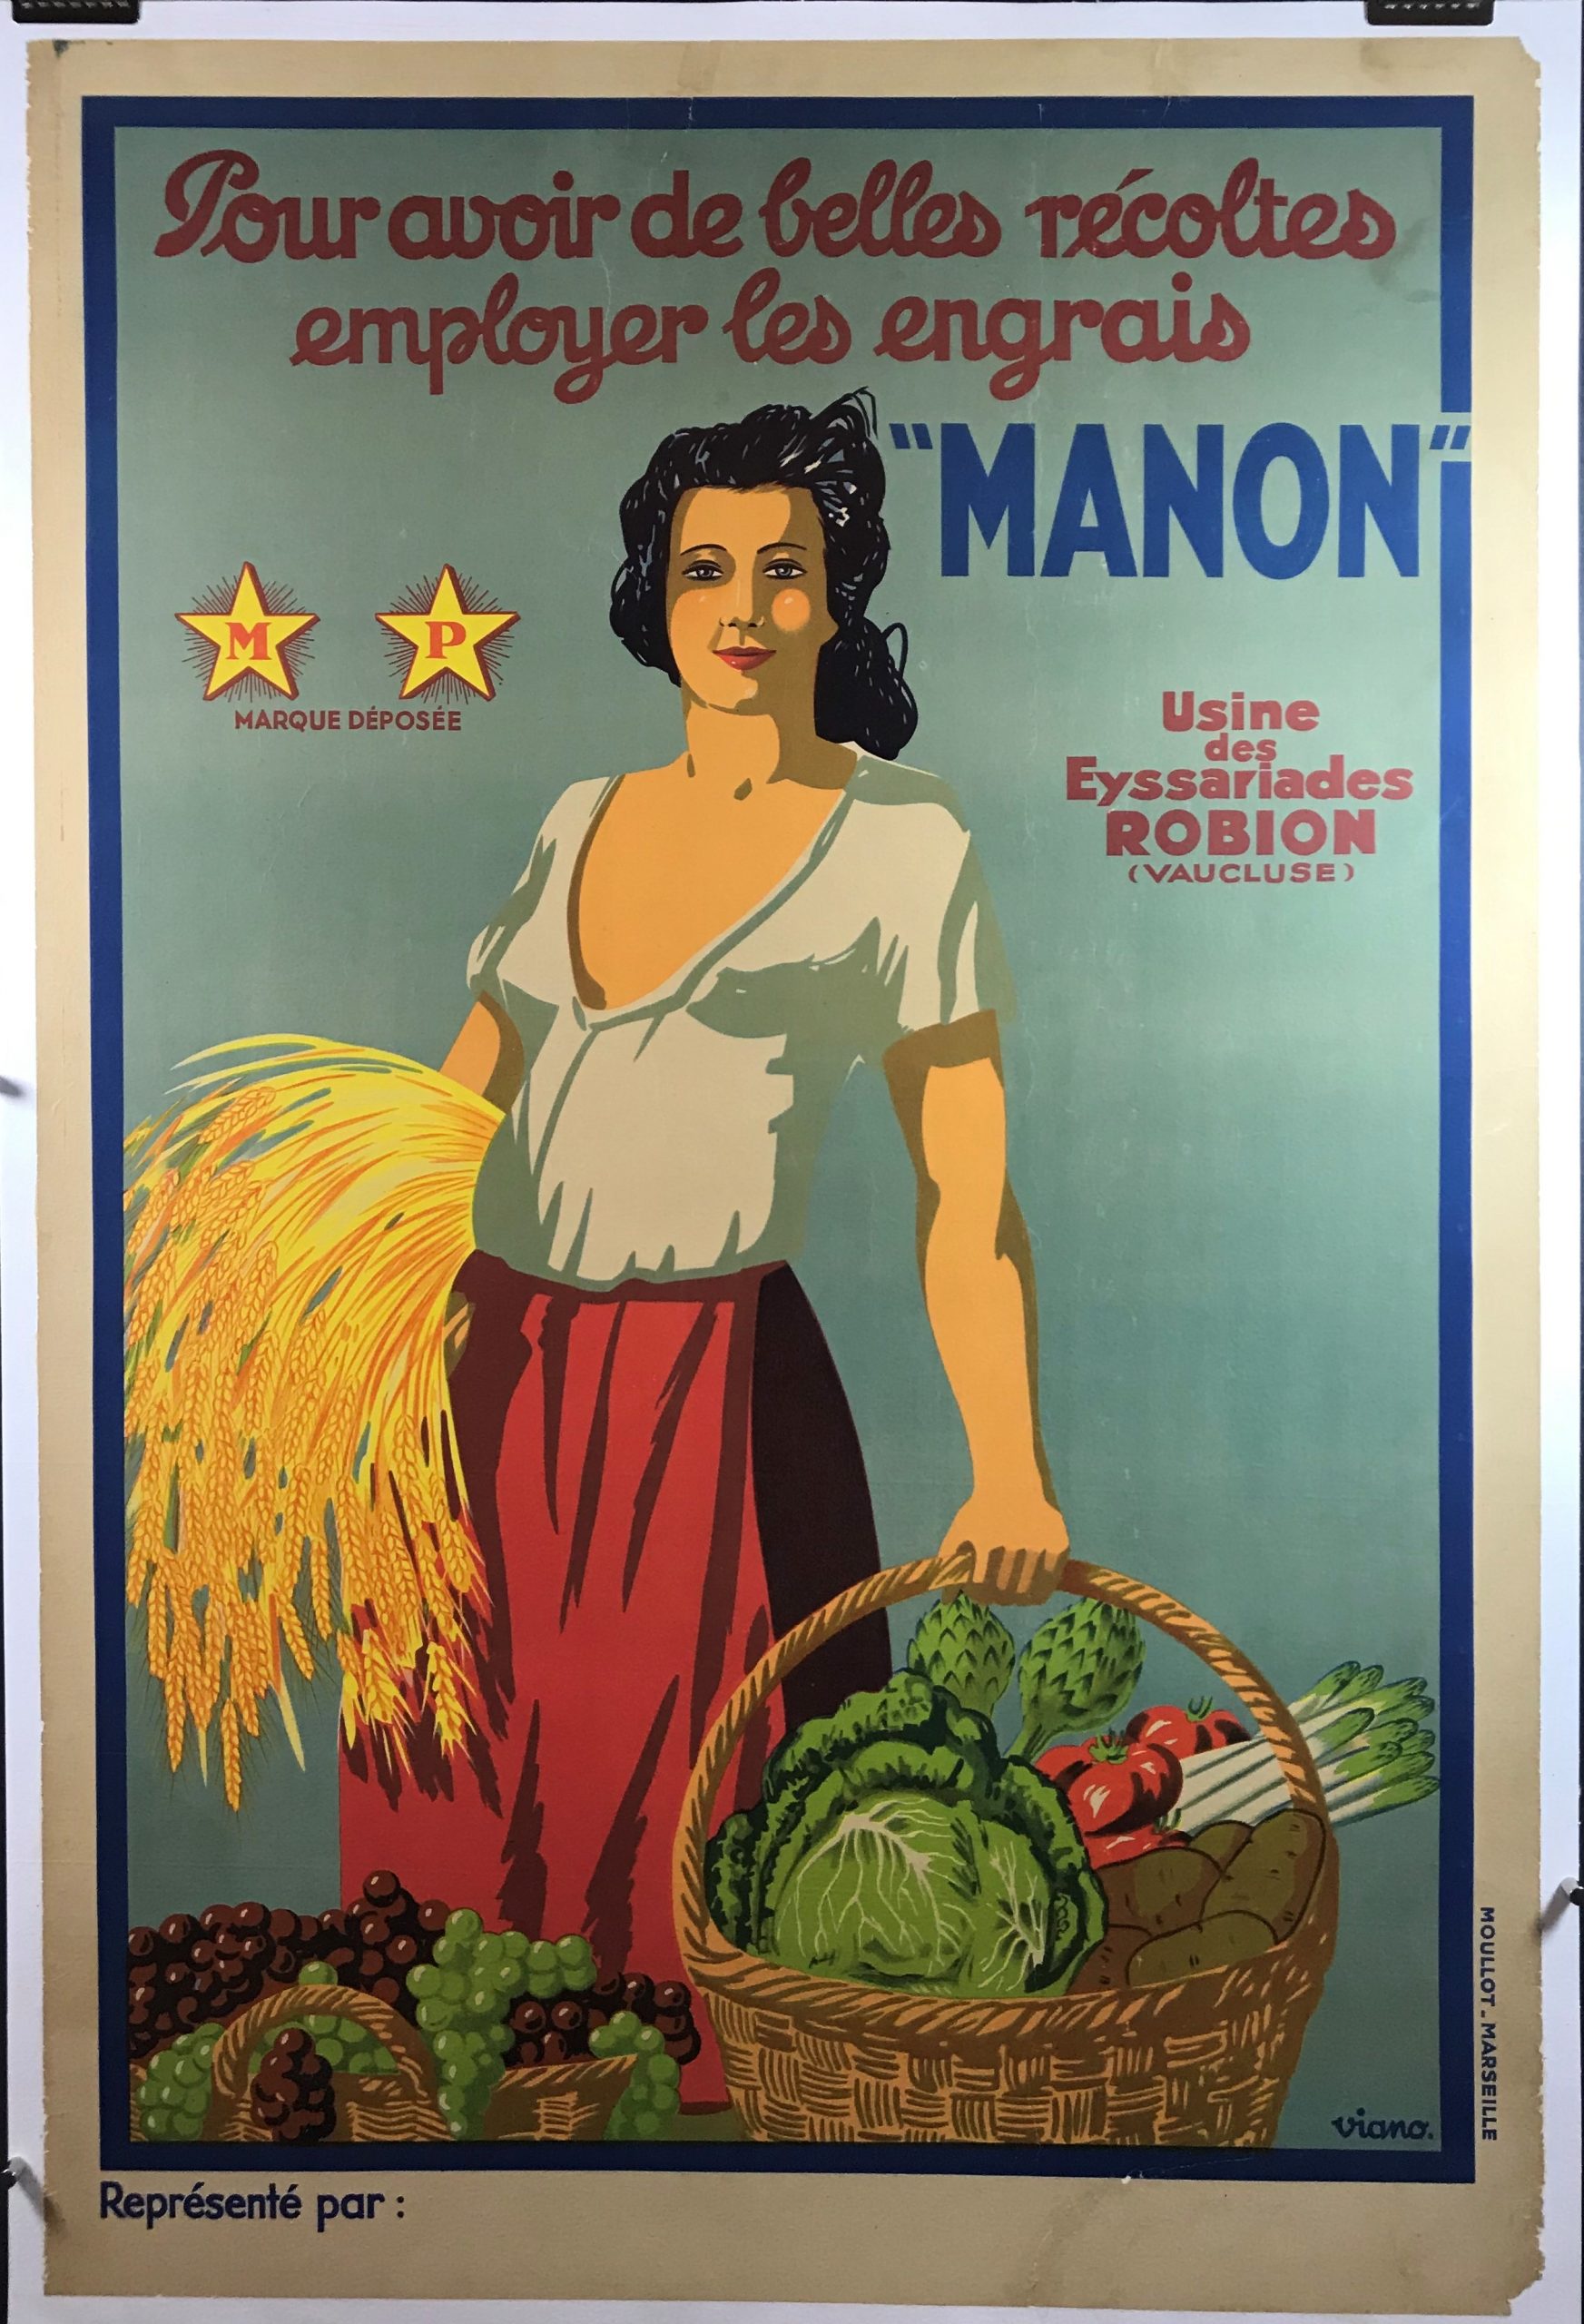 Vintage poster – France, Marseille – Galerie 1 2 3